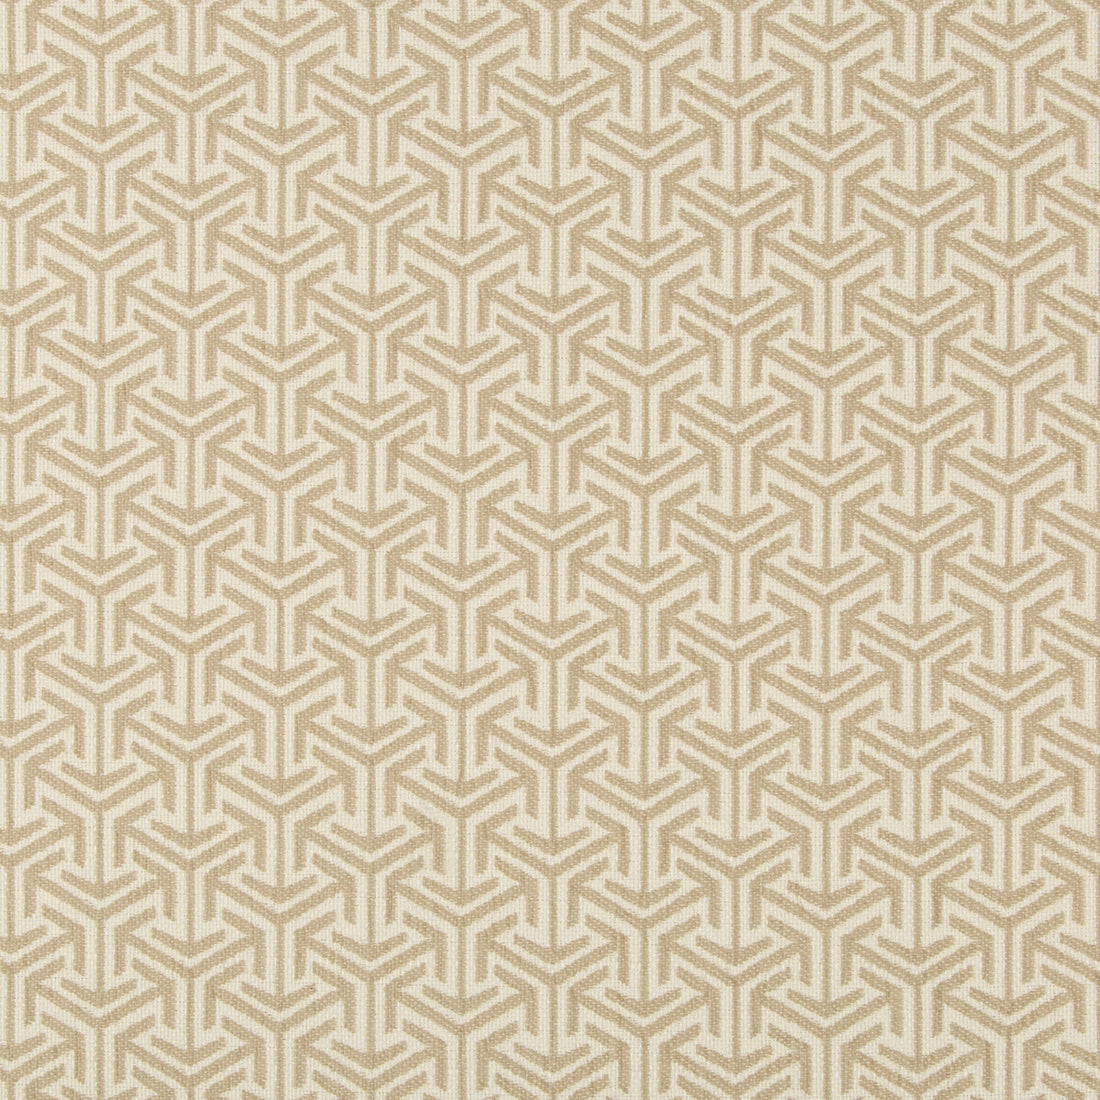 Kravet Design fabric in 35715-16 color - pattern 35715.16.0 - by Kravet Design